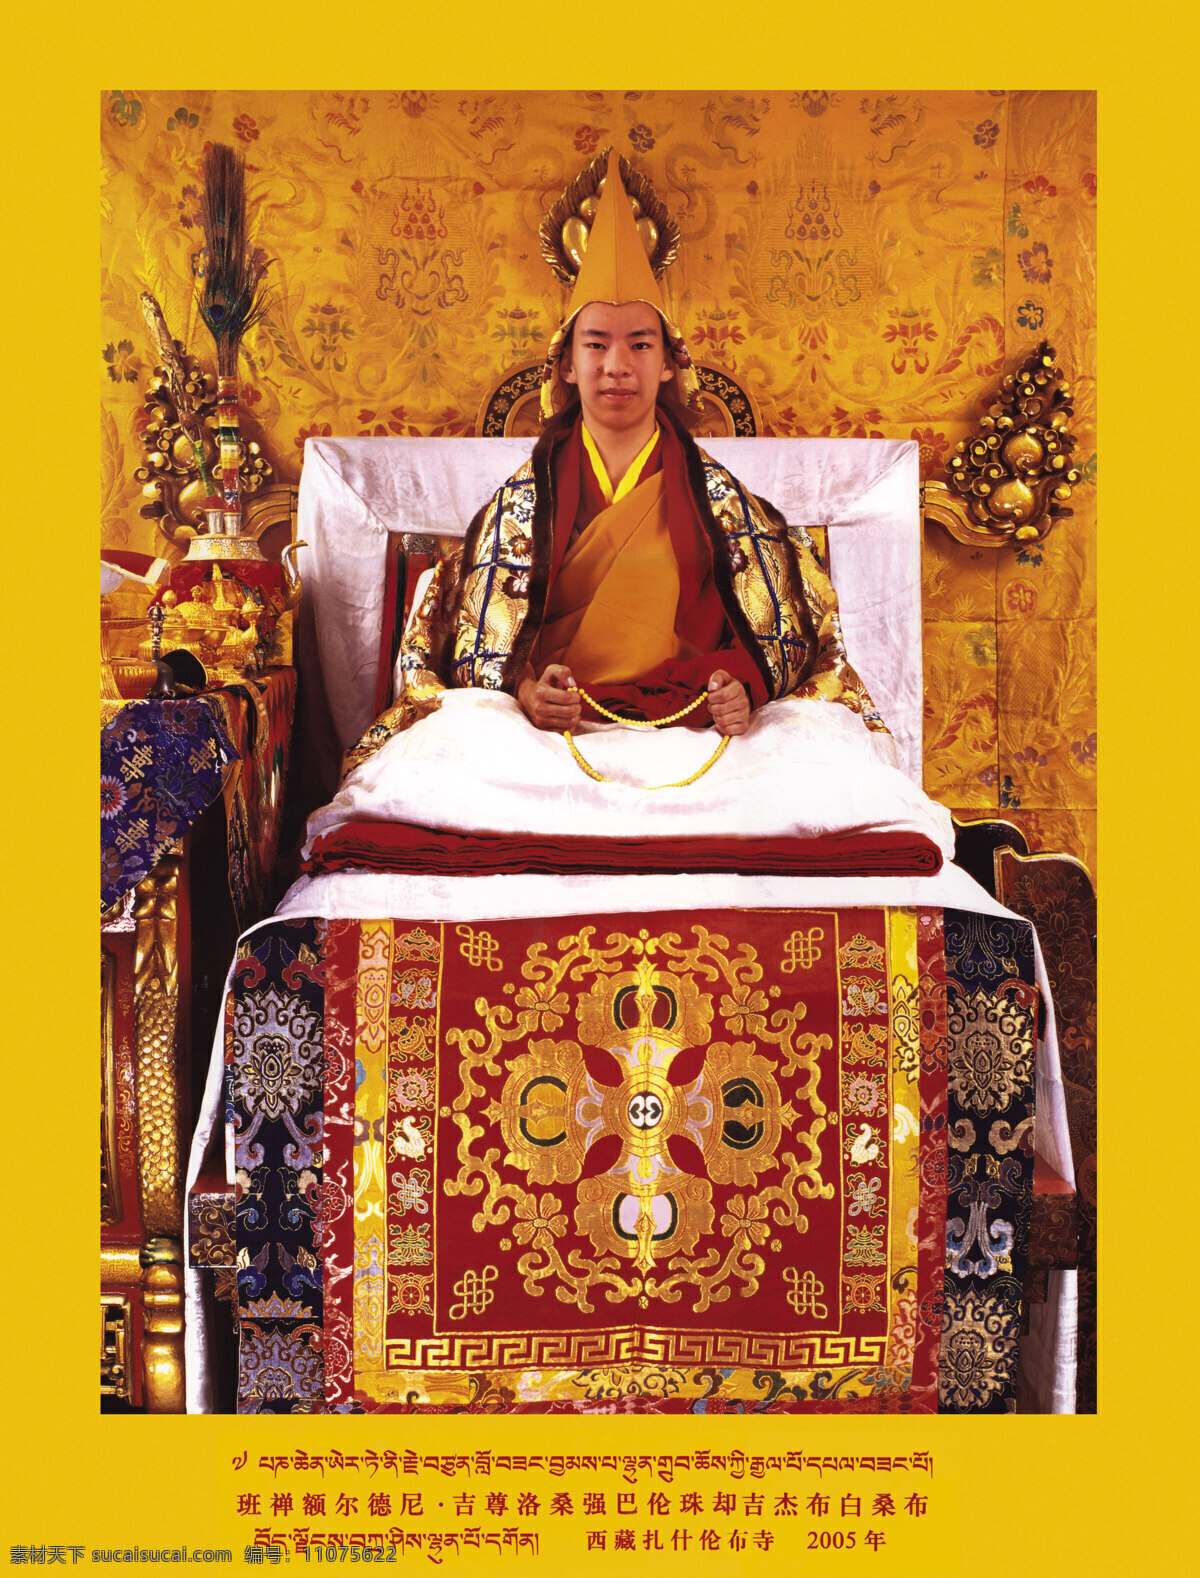 十一世班禅 西藏 日喀则 十一世 班禅 宗教 活佛 扎什伦布寺 信仰 灵塔 西藏名族画册 宗教信仰 文化艺术